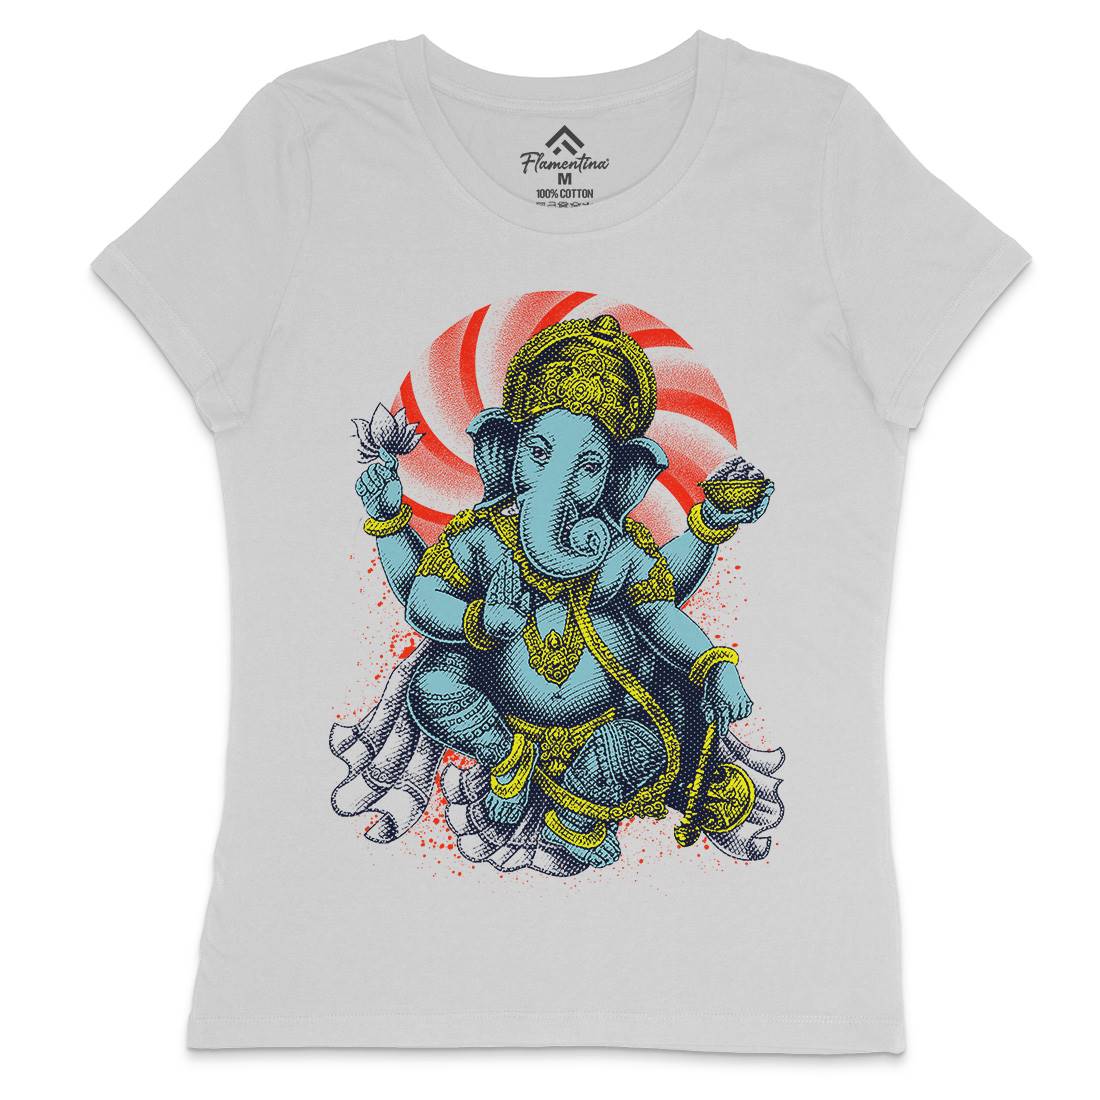 Hindu Goddess Womens Crew Neck T-Shirt Asian D043